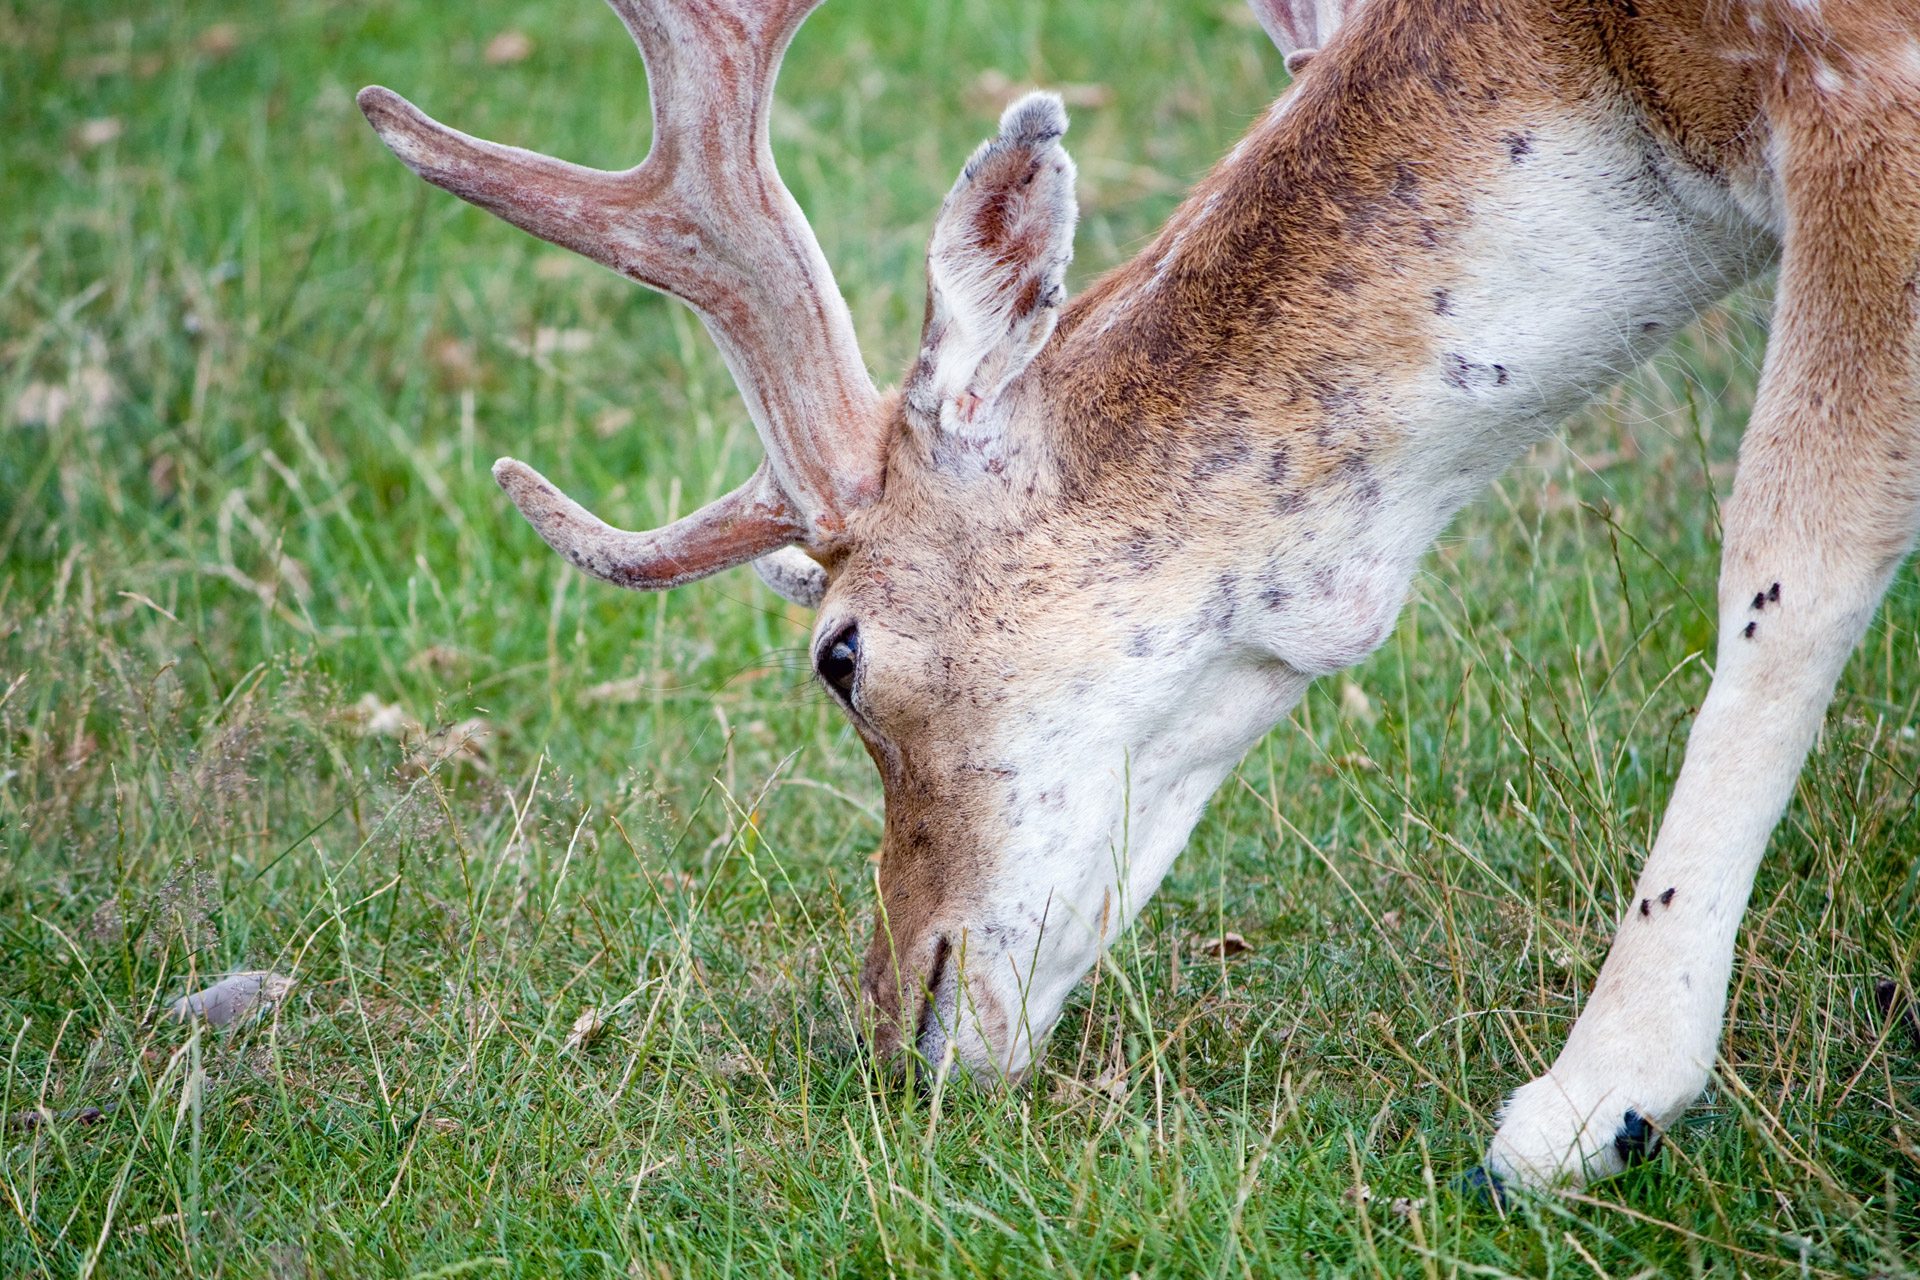 Deer Close-up